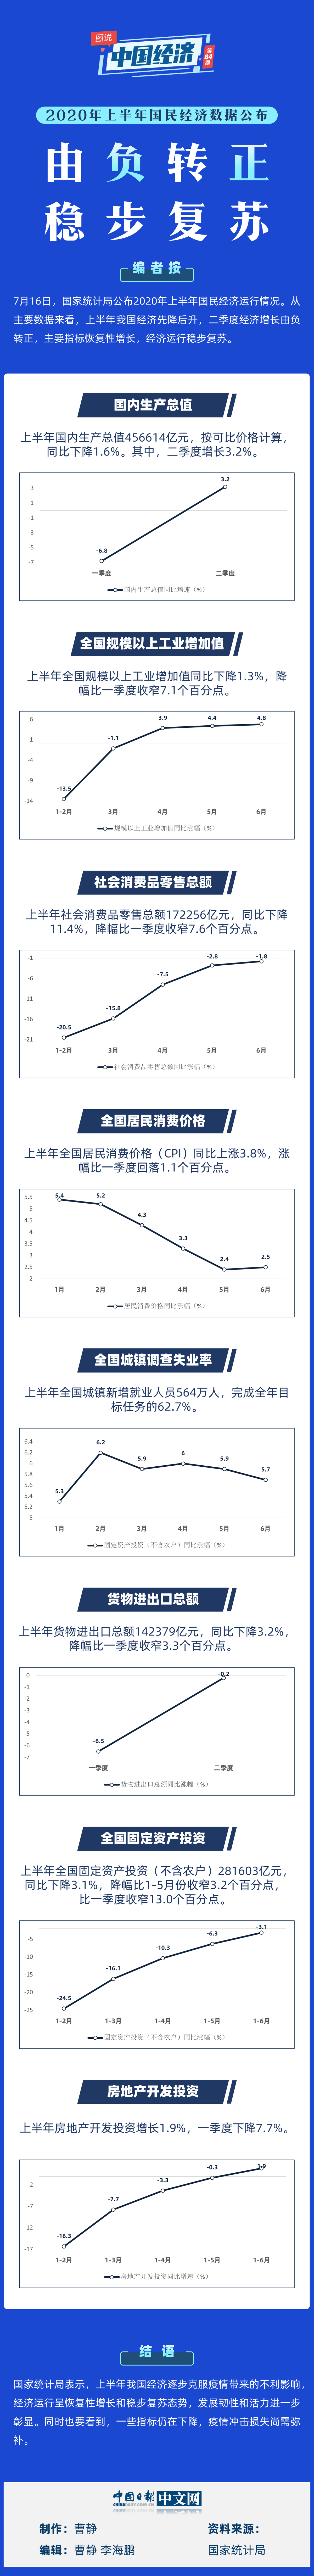 【图说中国经济】2020年上半年国民经济数据公布：由负转正 稳步复苏